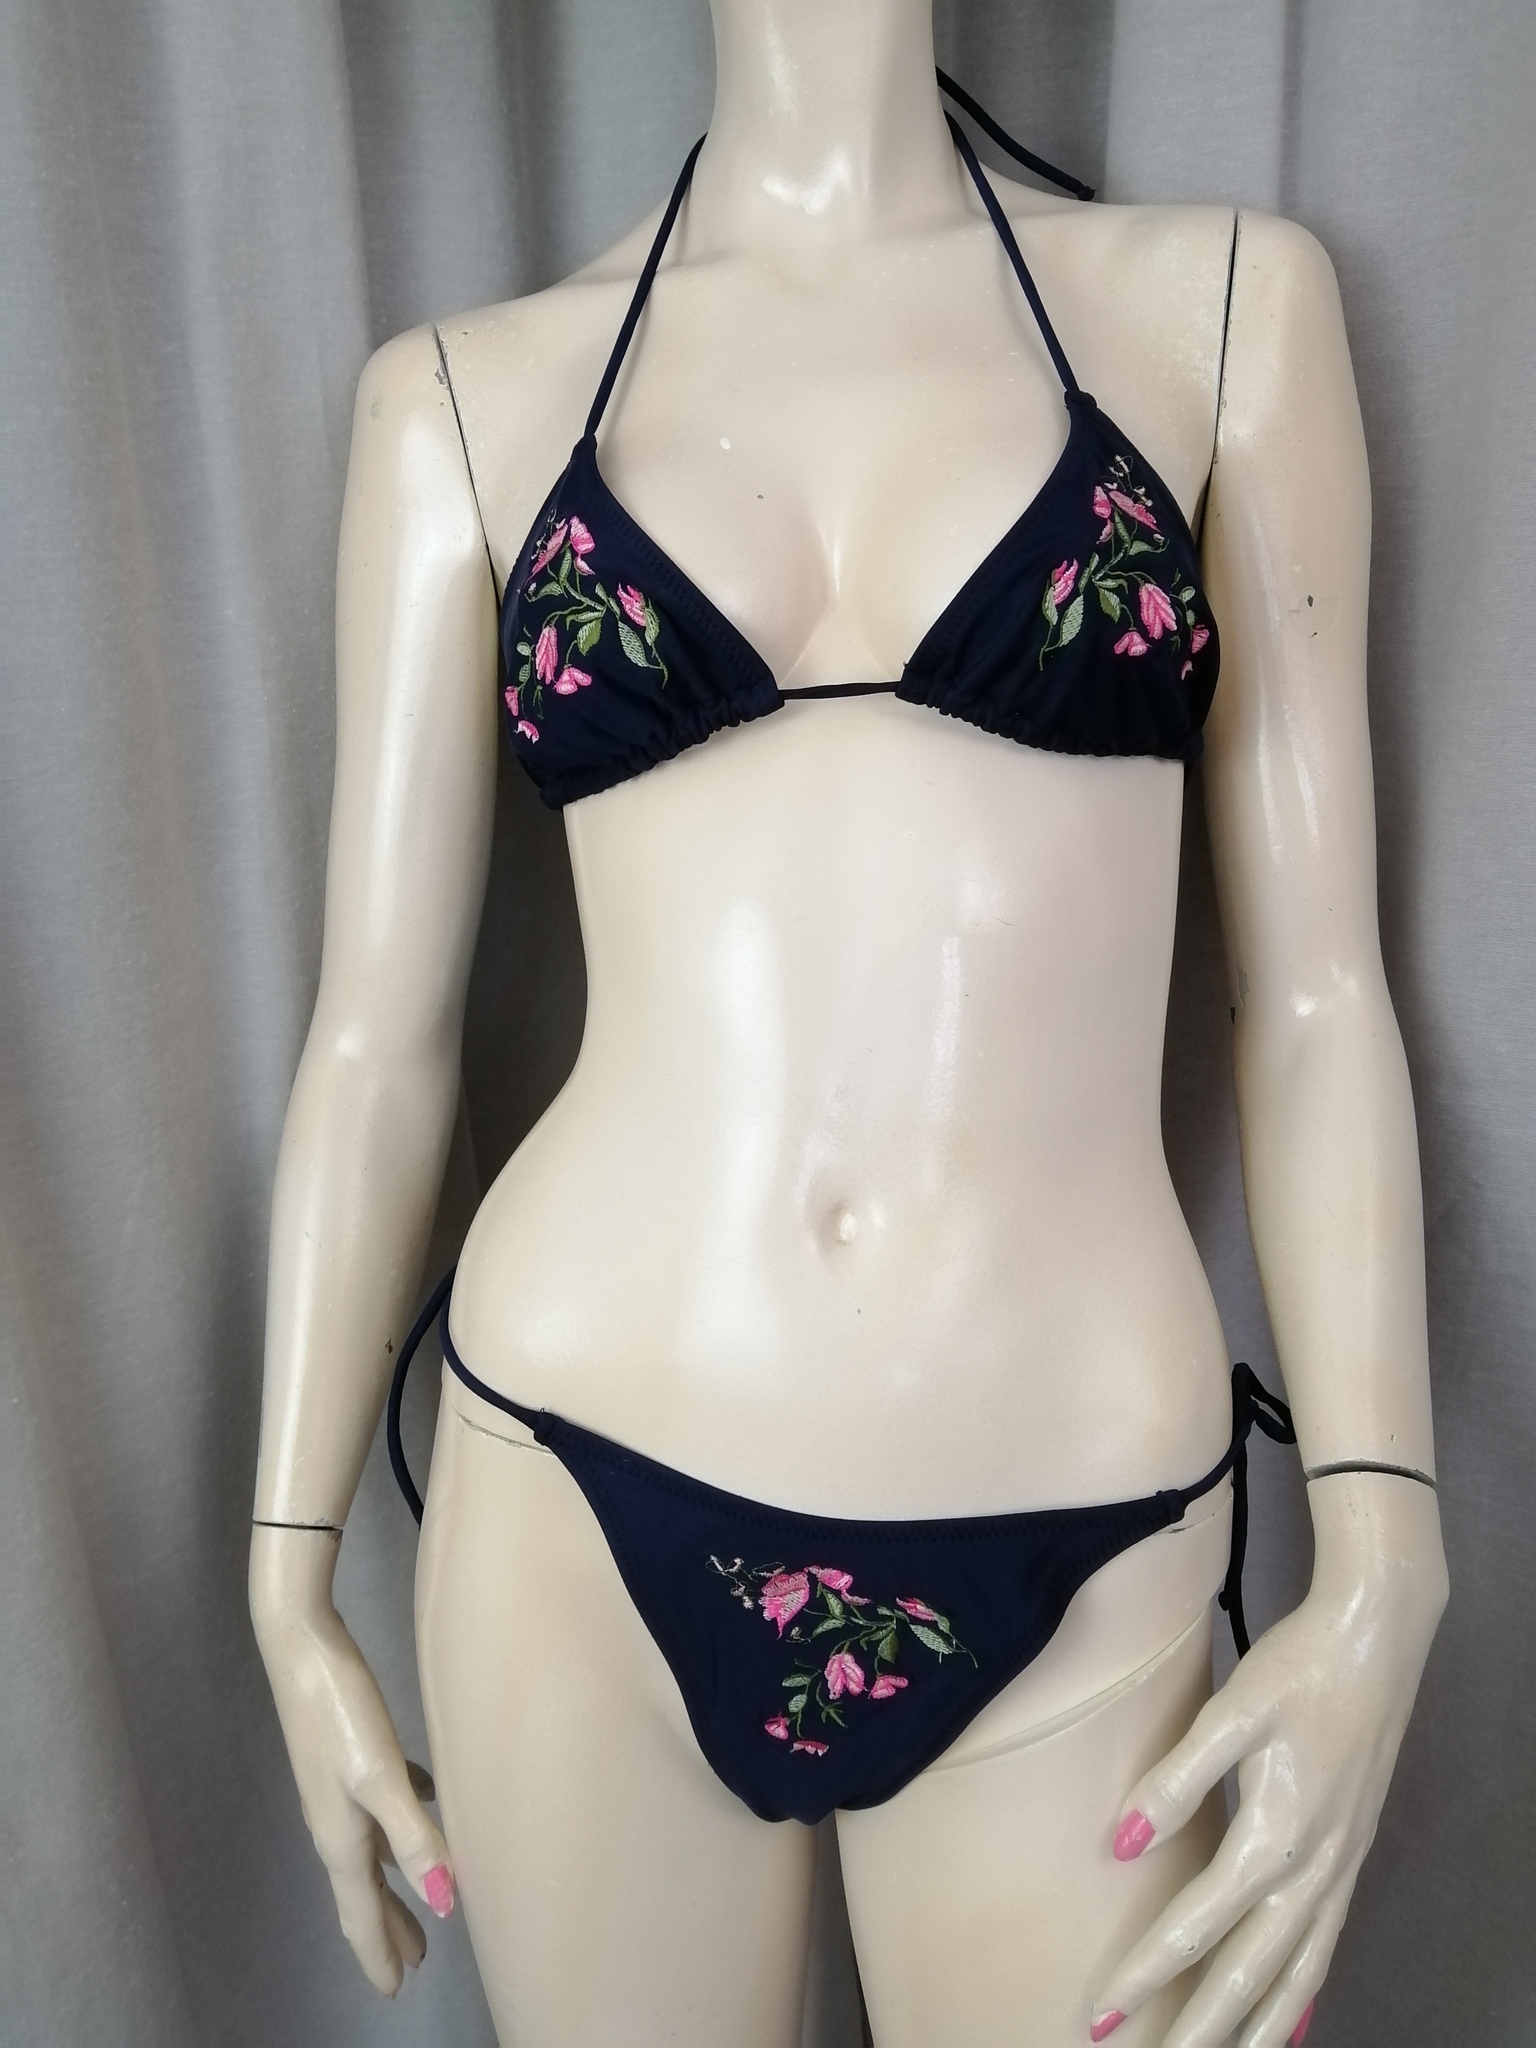 Vintage 60-tal Grace triangle-bikini blå med rosa blomdekor pytteliten